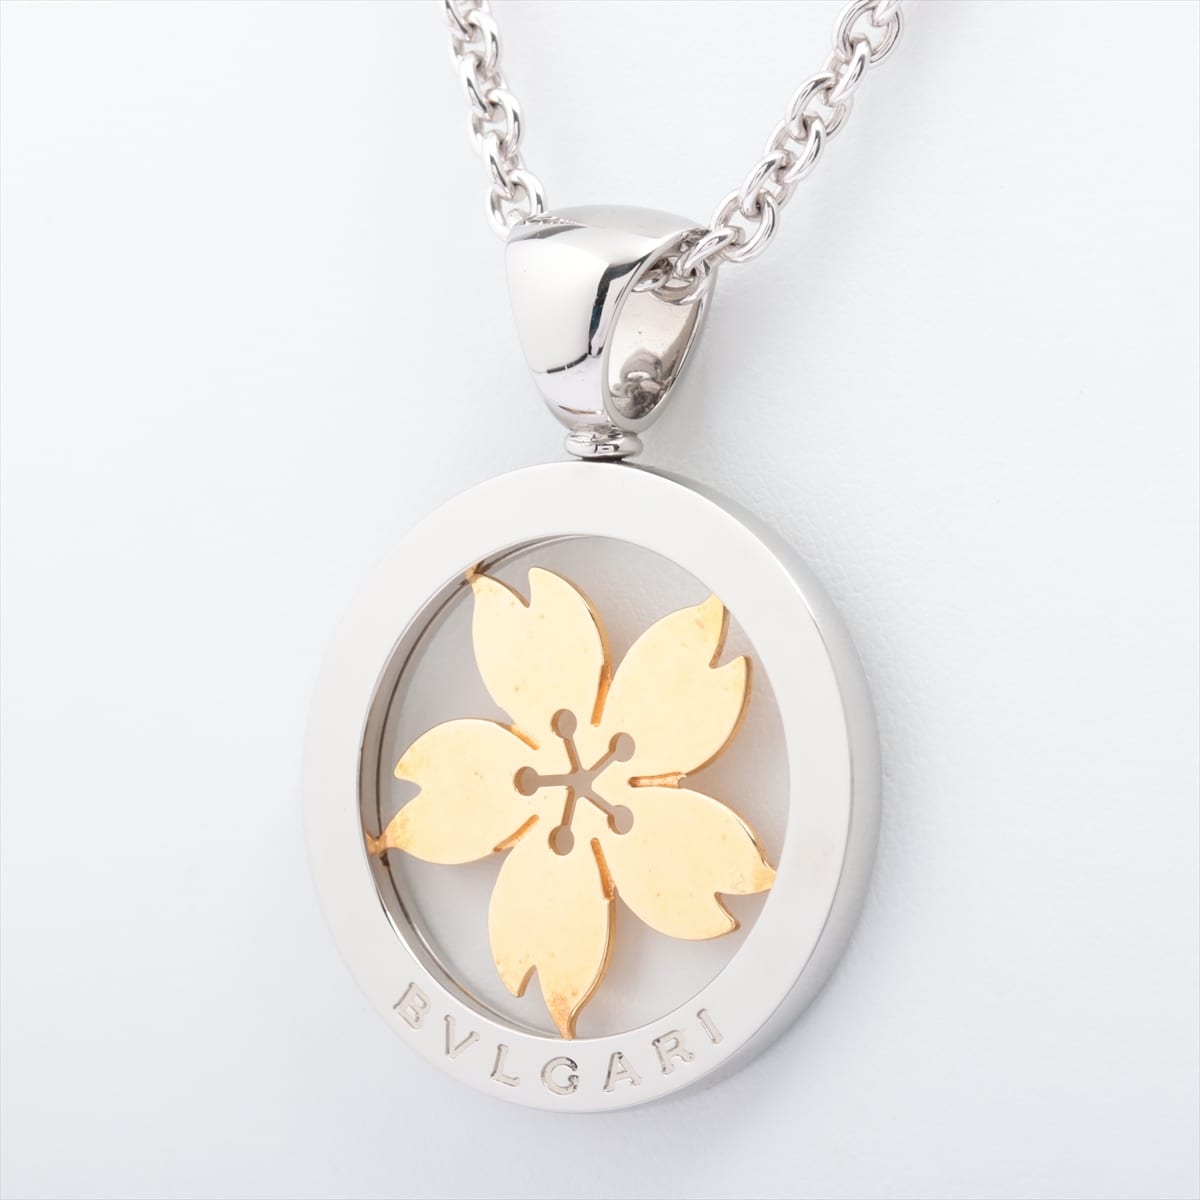 Bvlgari Tondo Sakura Necklace 750×SS 33.4g Gold × Silver